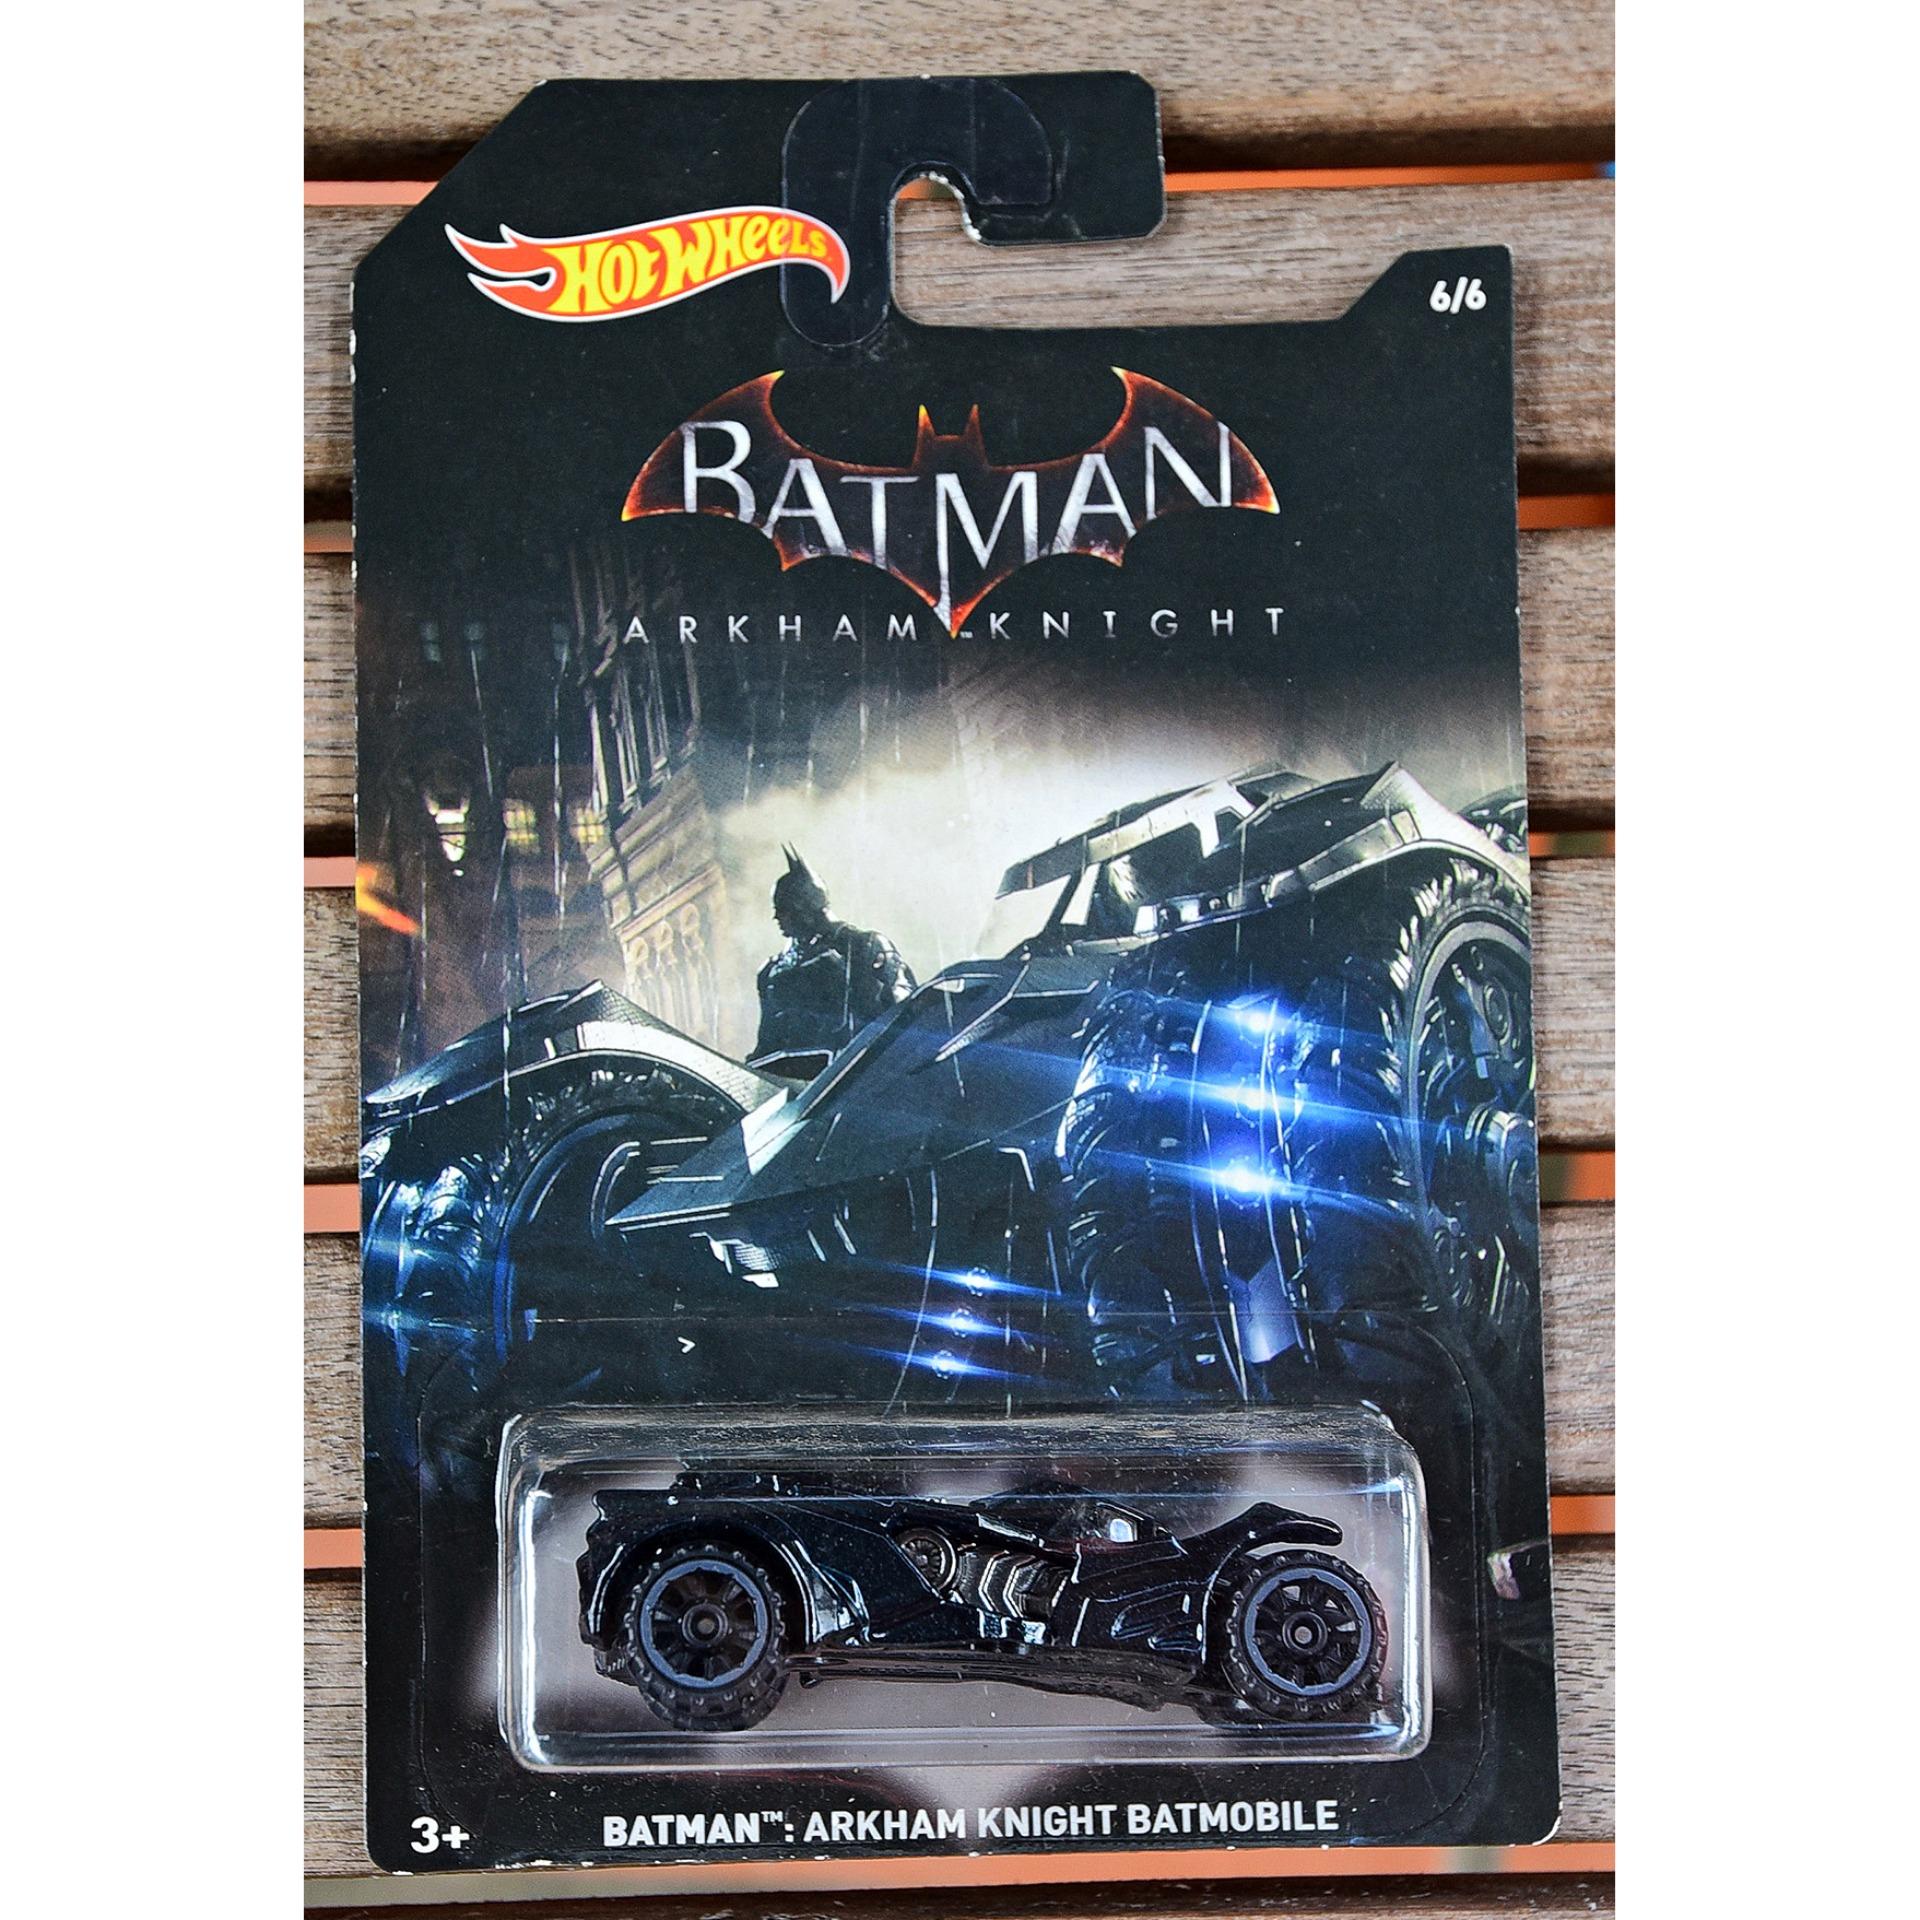 Ô tô mô hình tỉ lệ 1:64 Hot Wheels Batman Arkham Knight Batmobile 6/6 ( Màu  Đen ) 